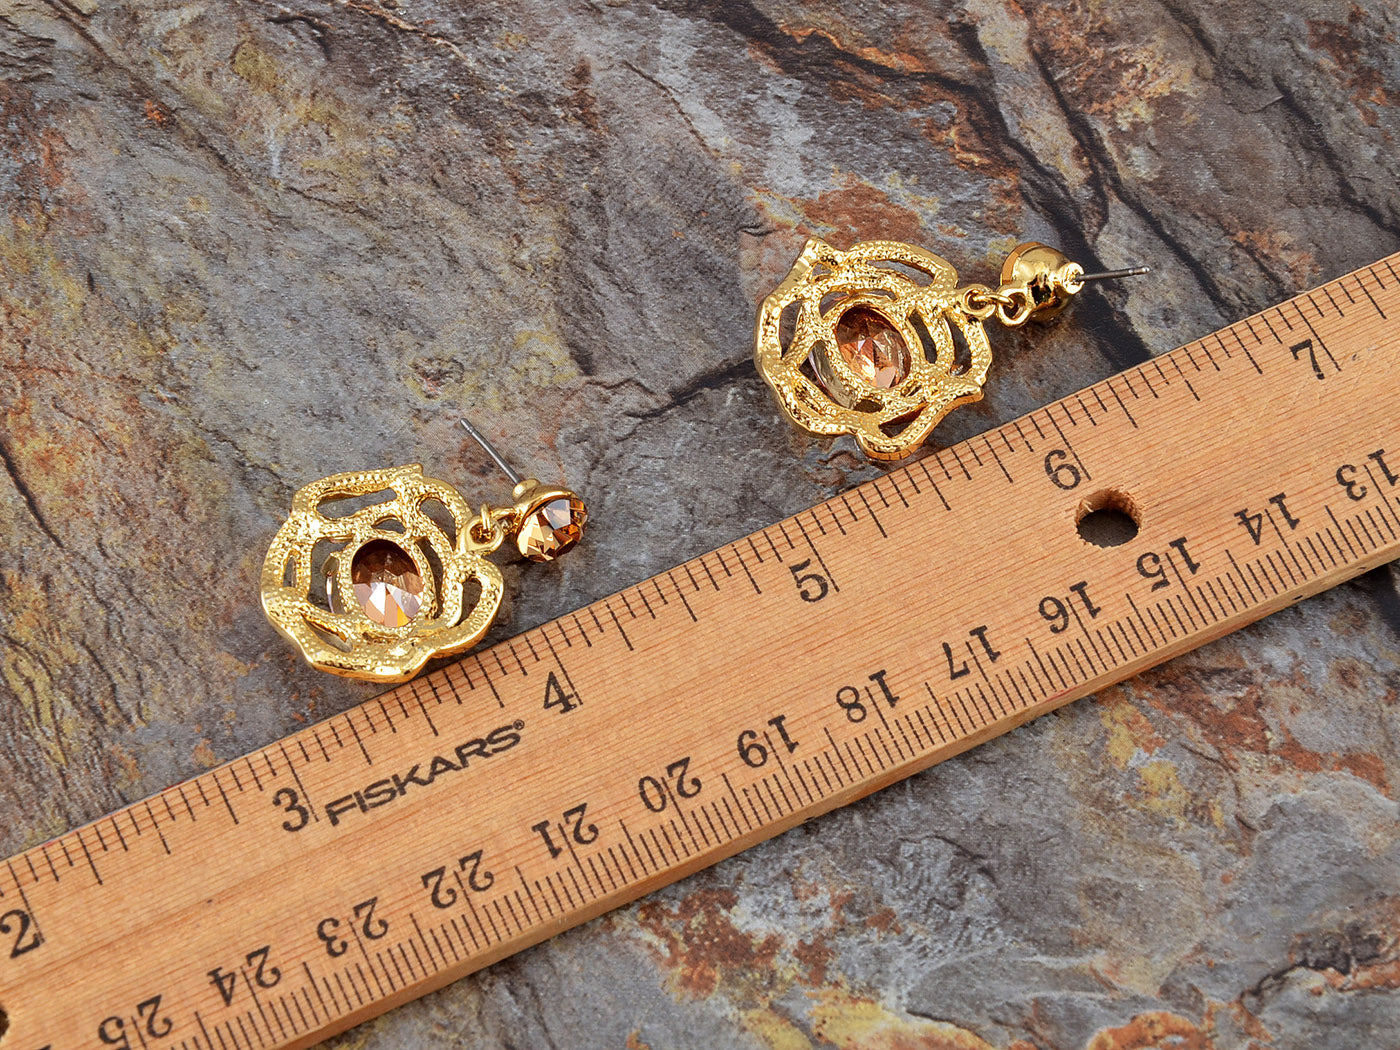 Swarovski Crystal Amber Rose Blossom Outline Necklace Earring Set